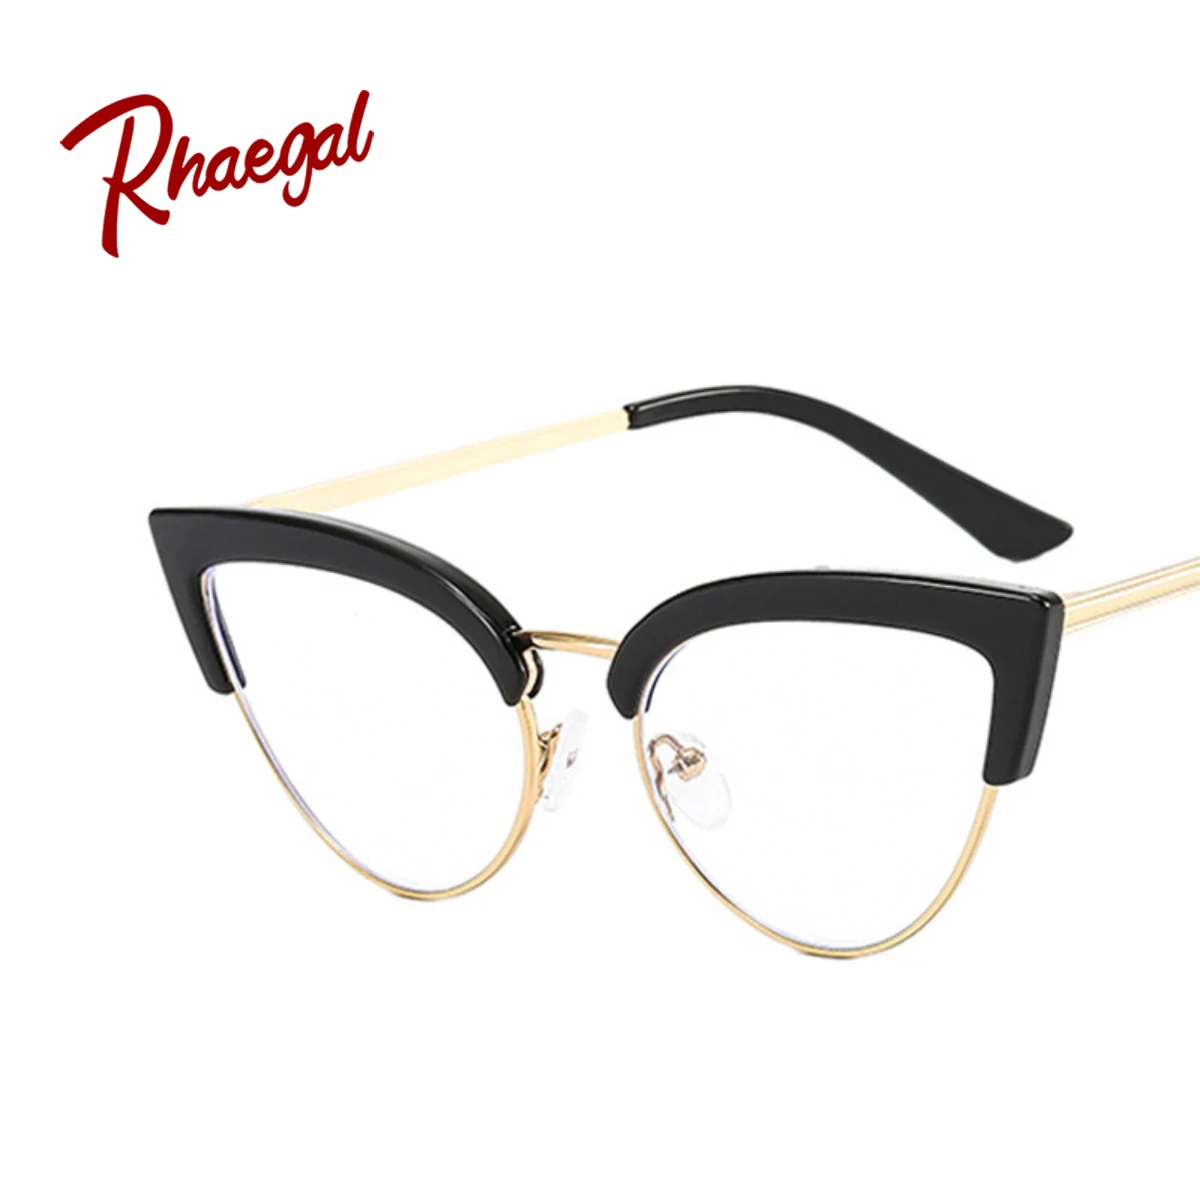 إطارات نظارات نصف حافة لعين rhaega-Cat ، إضاءة شخصية مضادة للأزرق ، عدسات مسطحة ، لون انبهار ، تصميم مقعر